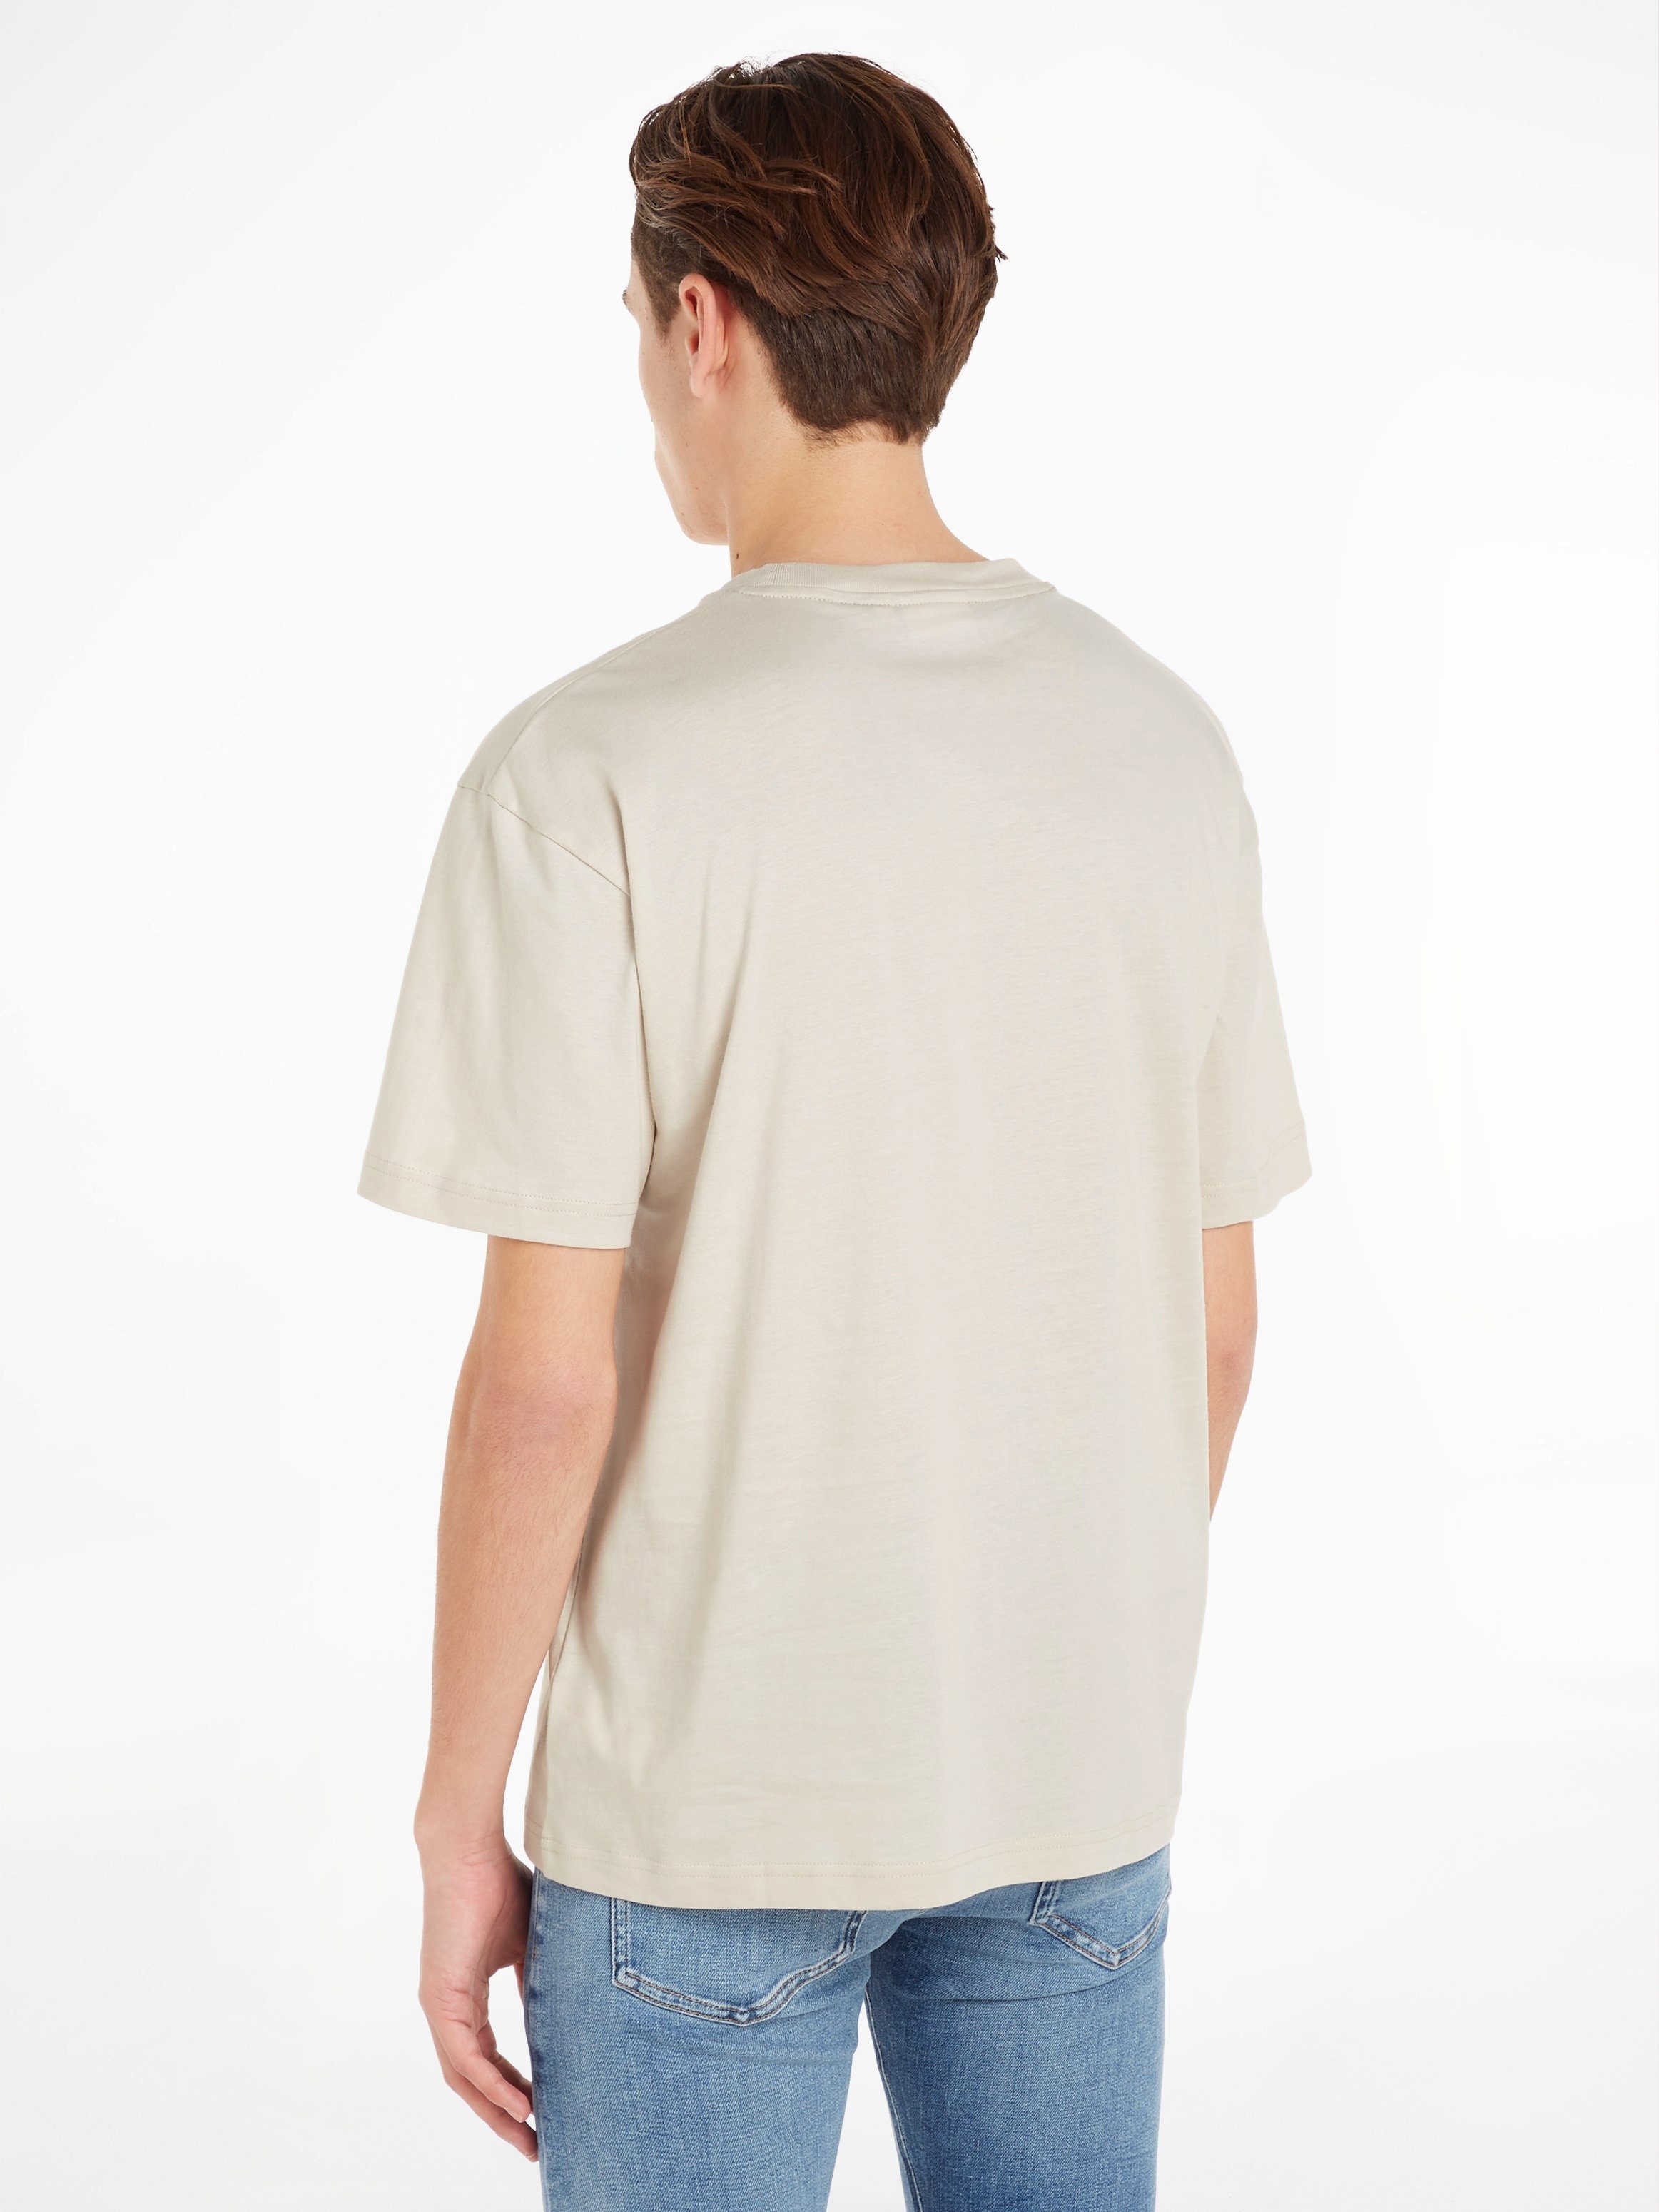 Calvin Klein LOGO Stony Markenlabel COMFORT T-SHIRT Beige mit T-Shirt HERO aufgedrucktem